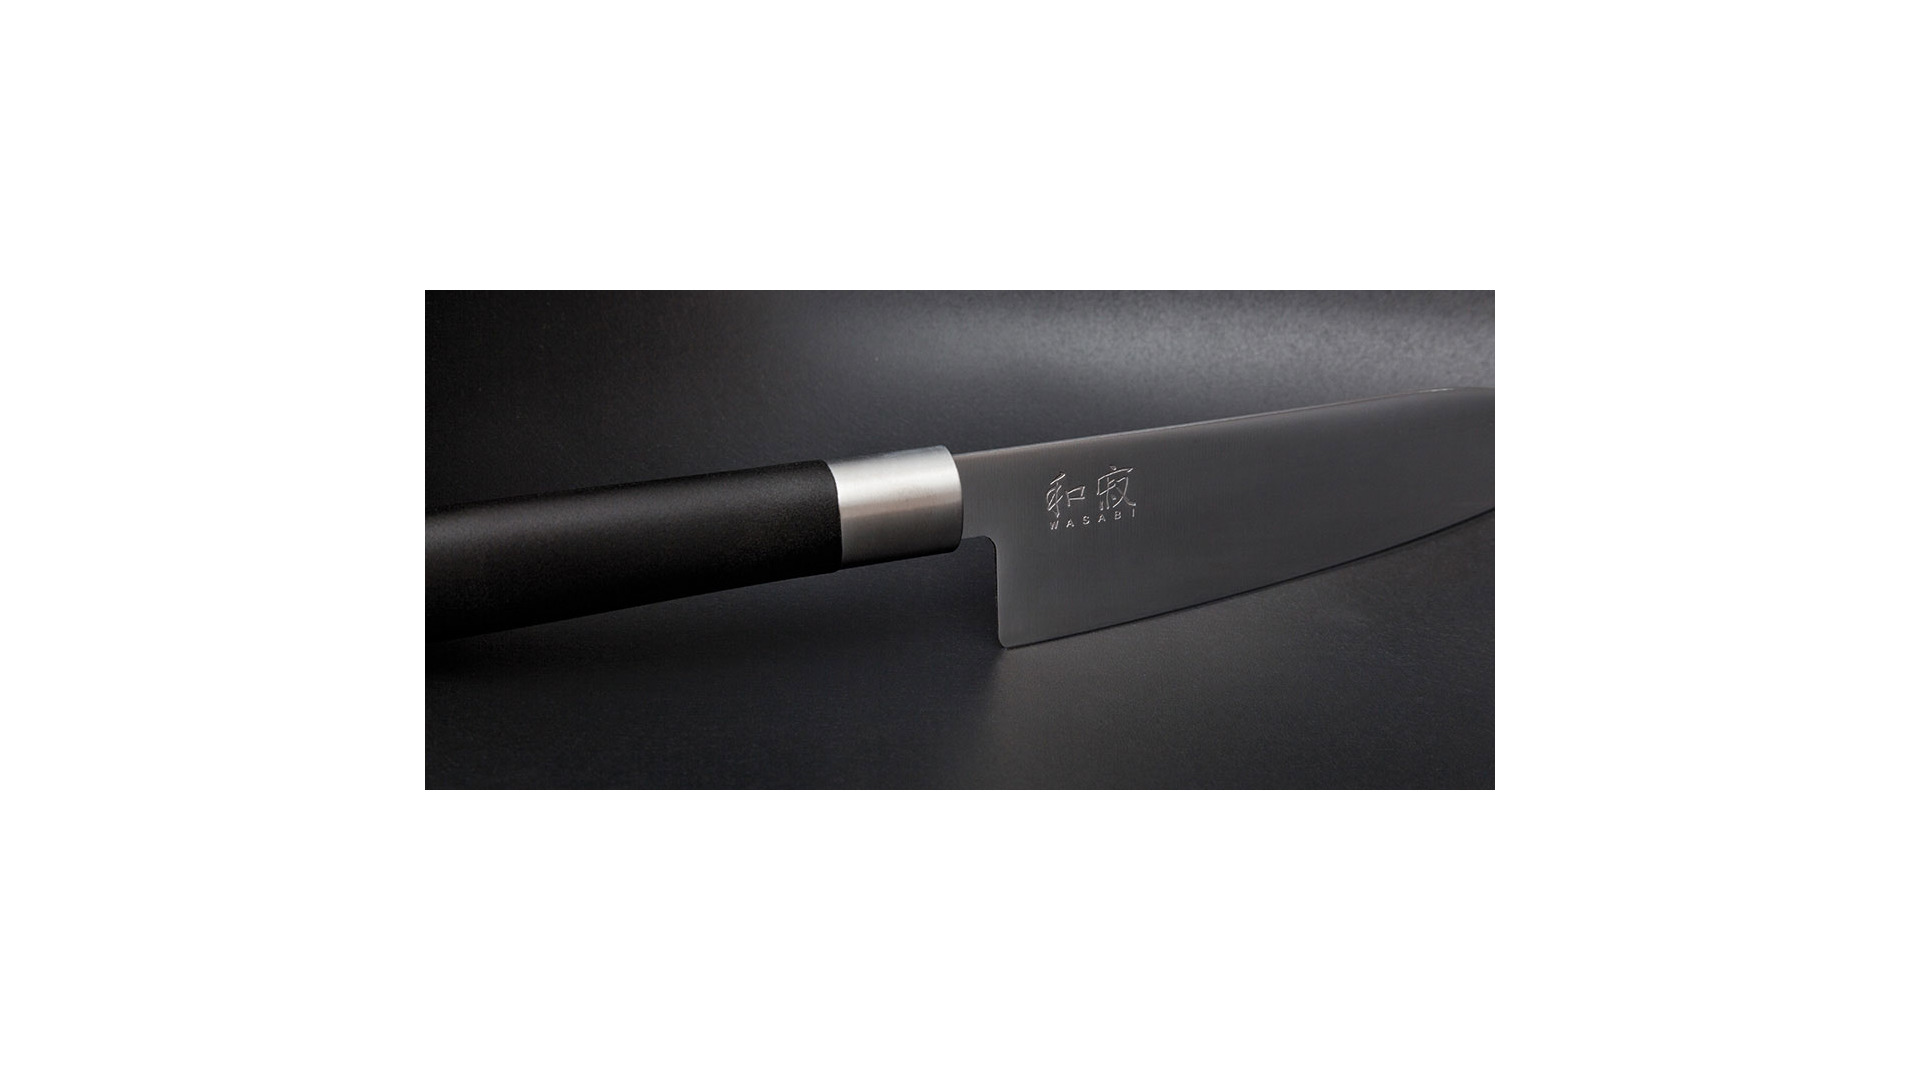 Набор ножей кухонных KAI Васаби, 3 шт, нож для чистки, универсальный, поварской